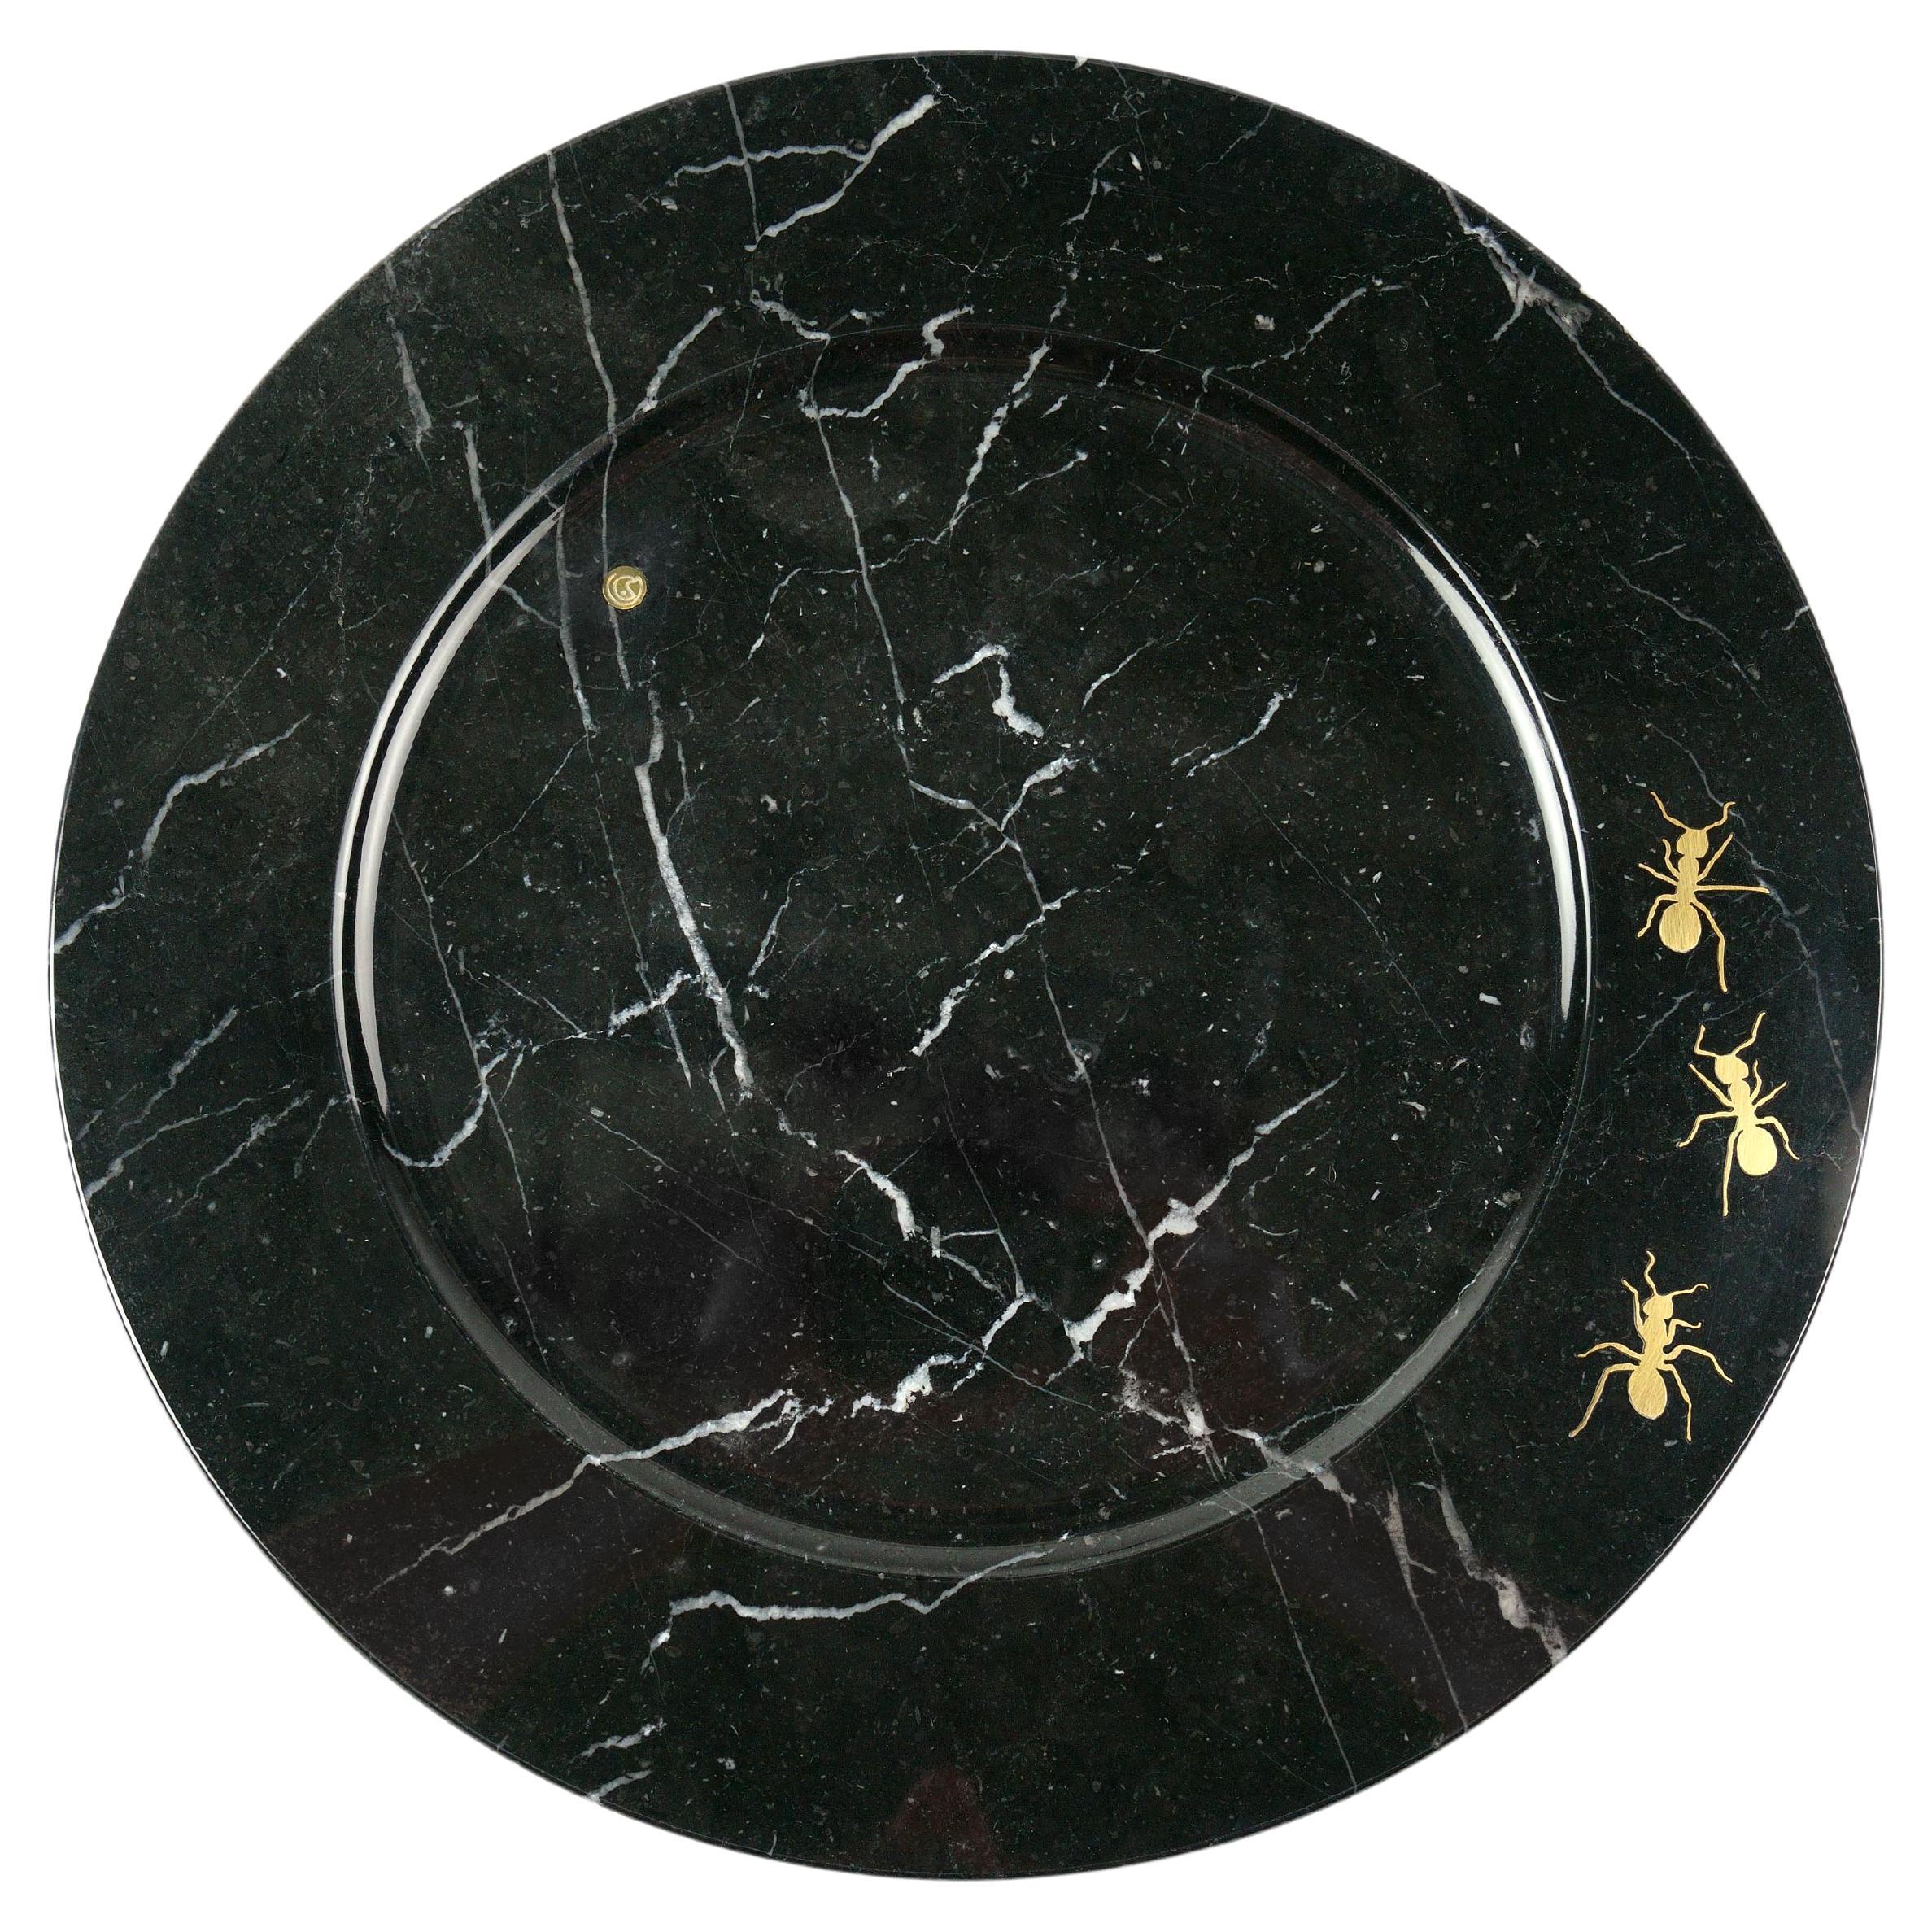 
Plateau sculpté à la main en marbre noir Marquinia avec incrustation de 3 fourmis en laiton. Utilisation multiple en tant qu'assiettes de présentation, assiettes, plateaux et plateaux de service. Dimensions : D 33, H 1,9 cm.

Dimensions : D 33, H